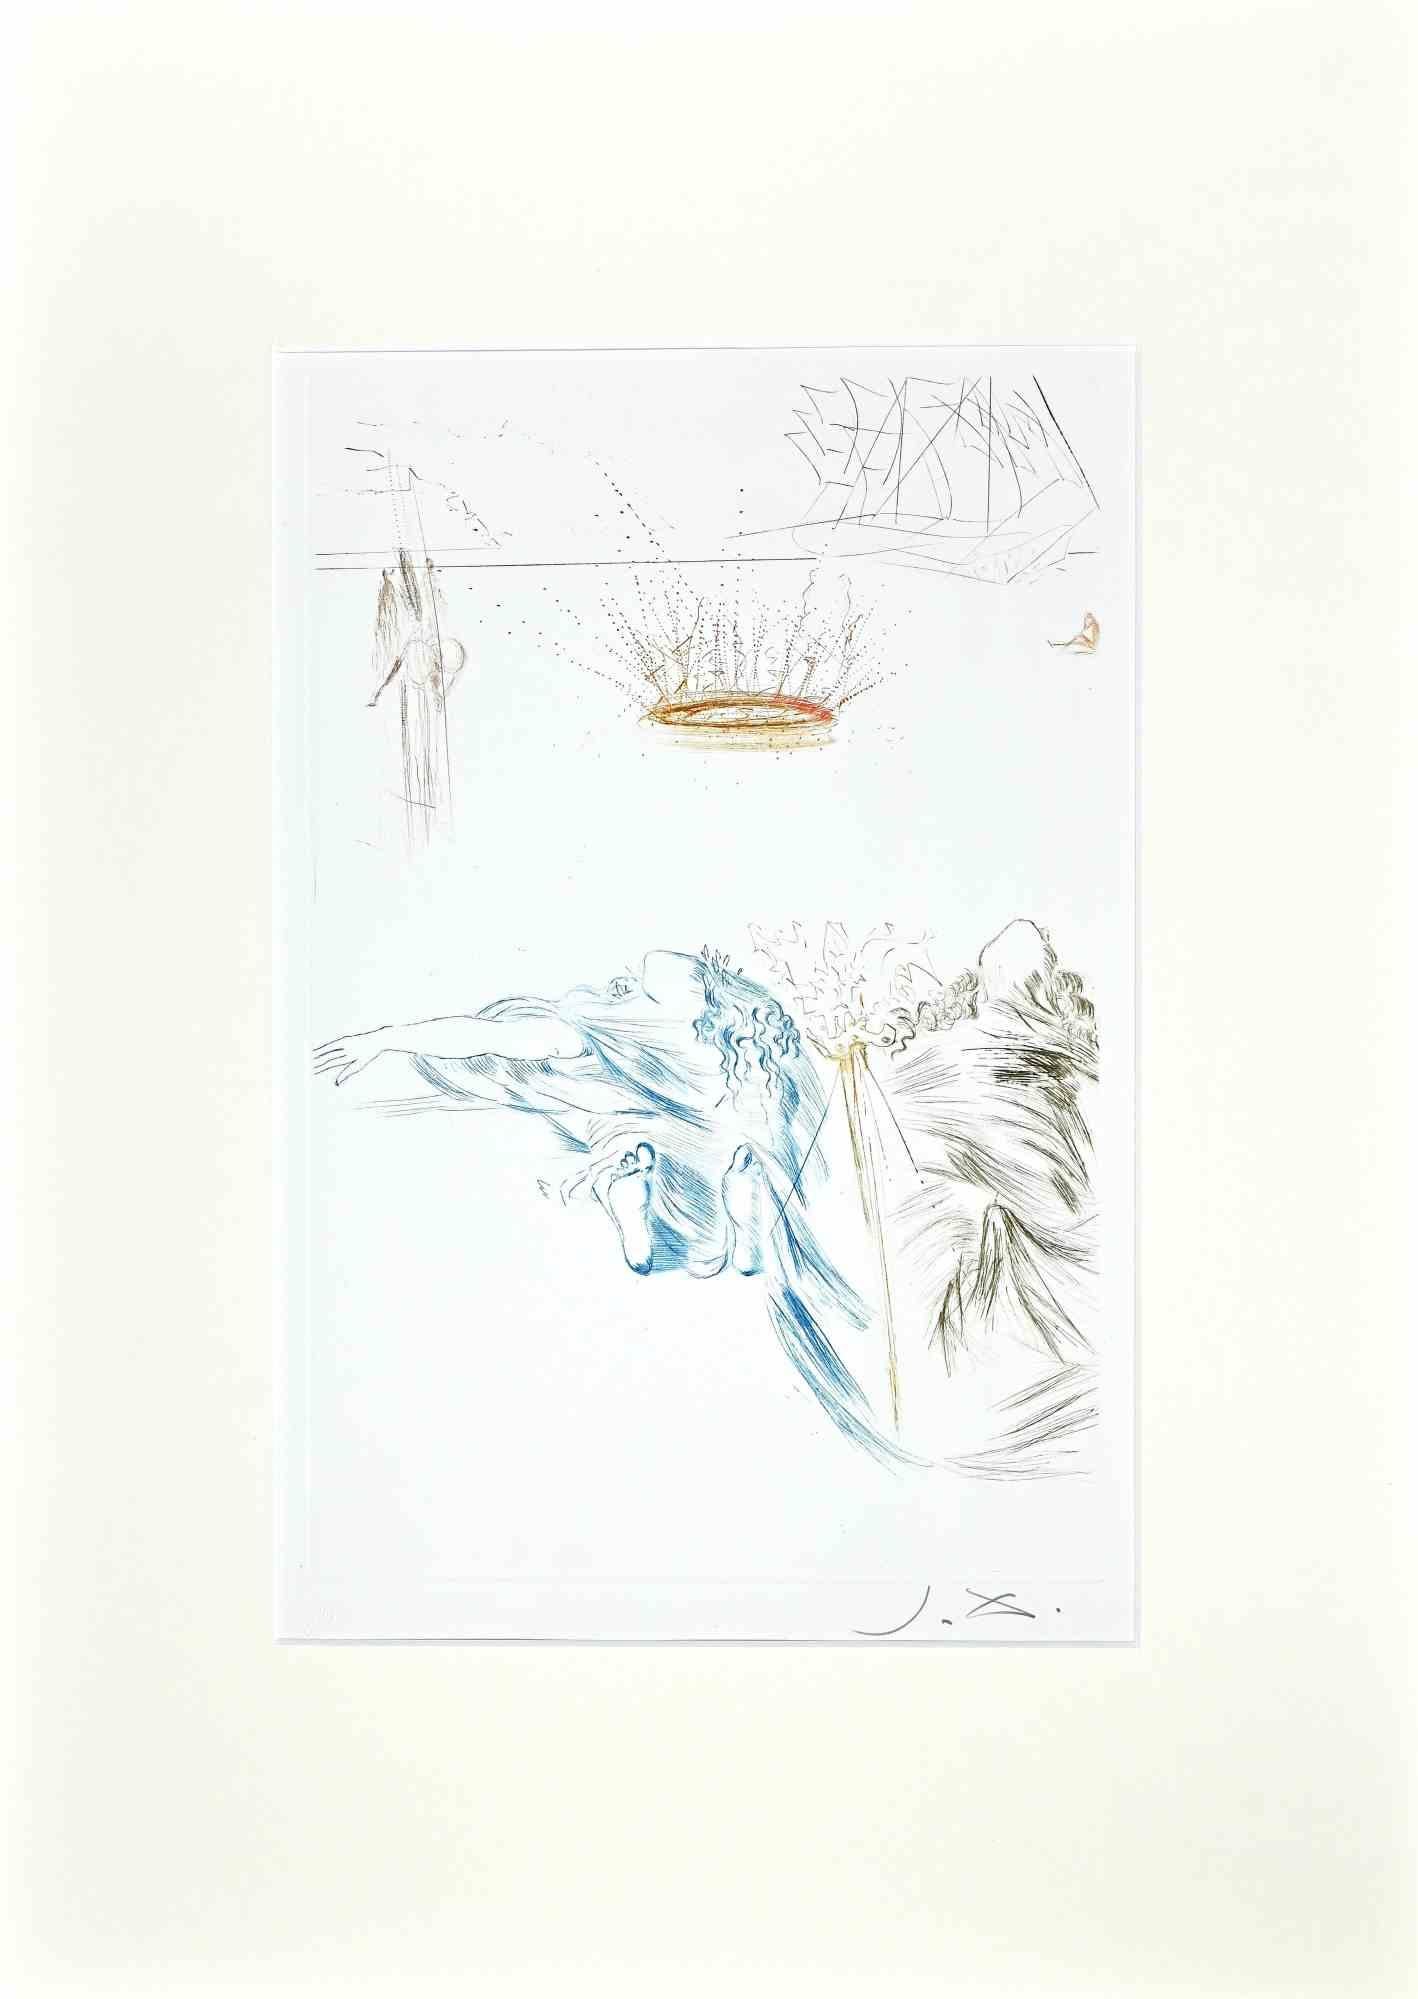 Le Testament de Tristan - Drypoint Etching attr. to S. Dalì - 1969 - Print by Salvador Dalí